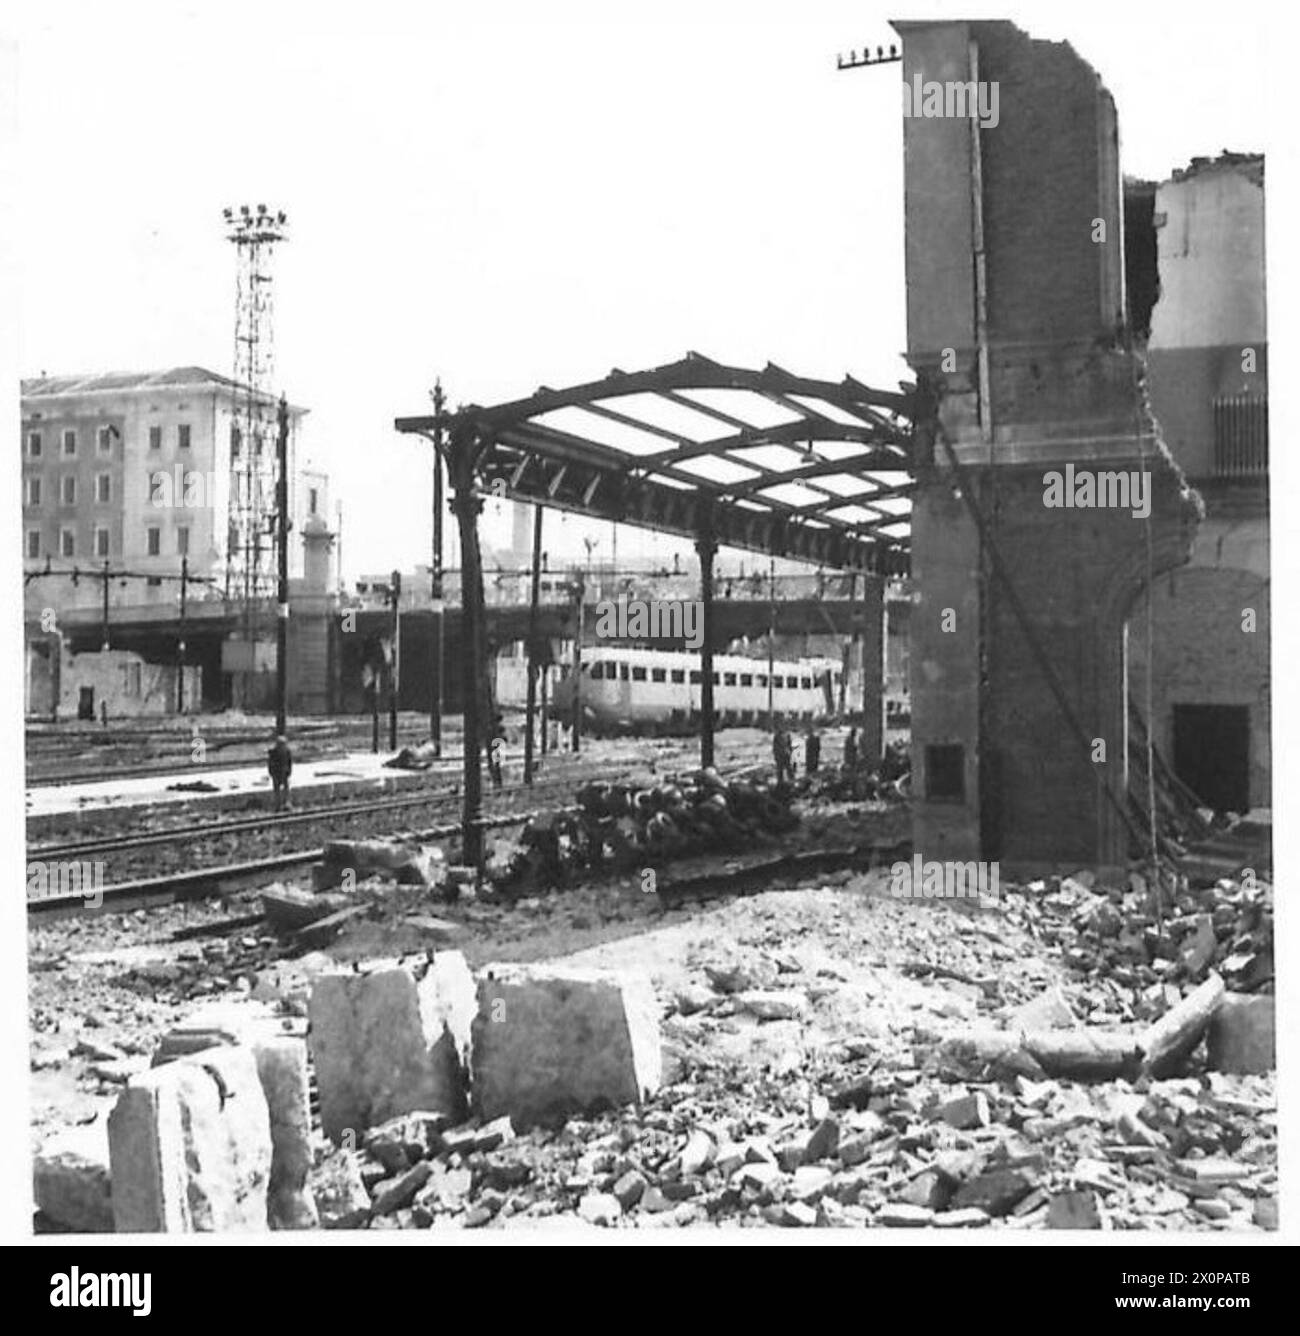 PRÄZISIONSBOMBARDIERUNG VON BOLOGNA - Blick auf den zerstörten Hauptbahnhof von Bologna. Fotografisches negativ, britische Armee Stockfoto